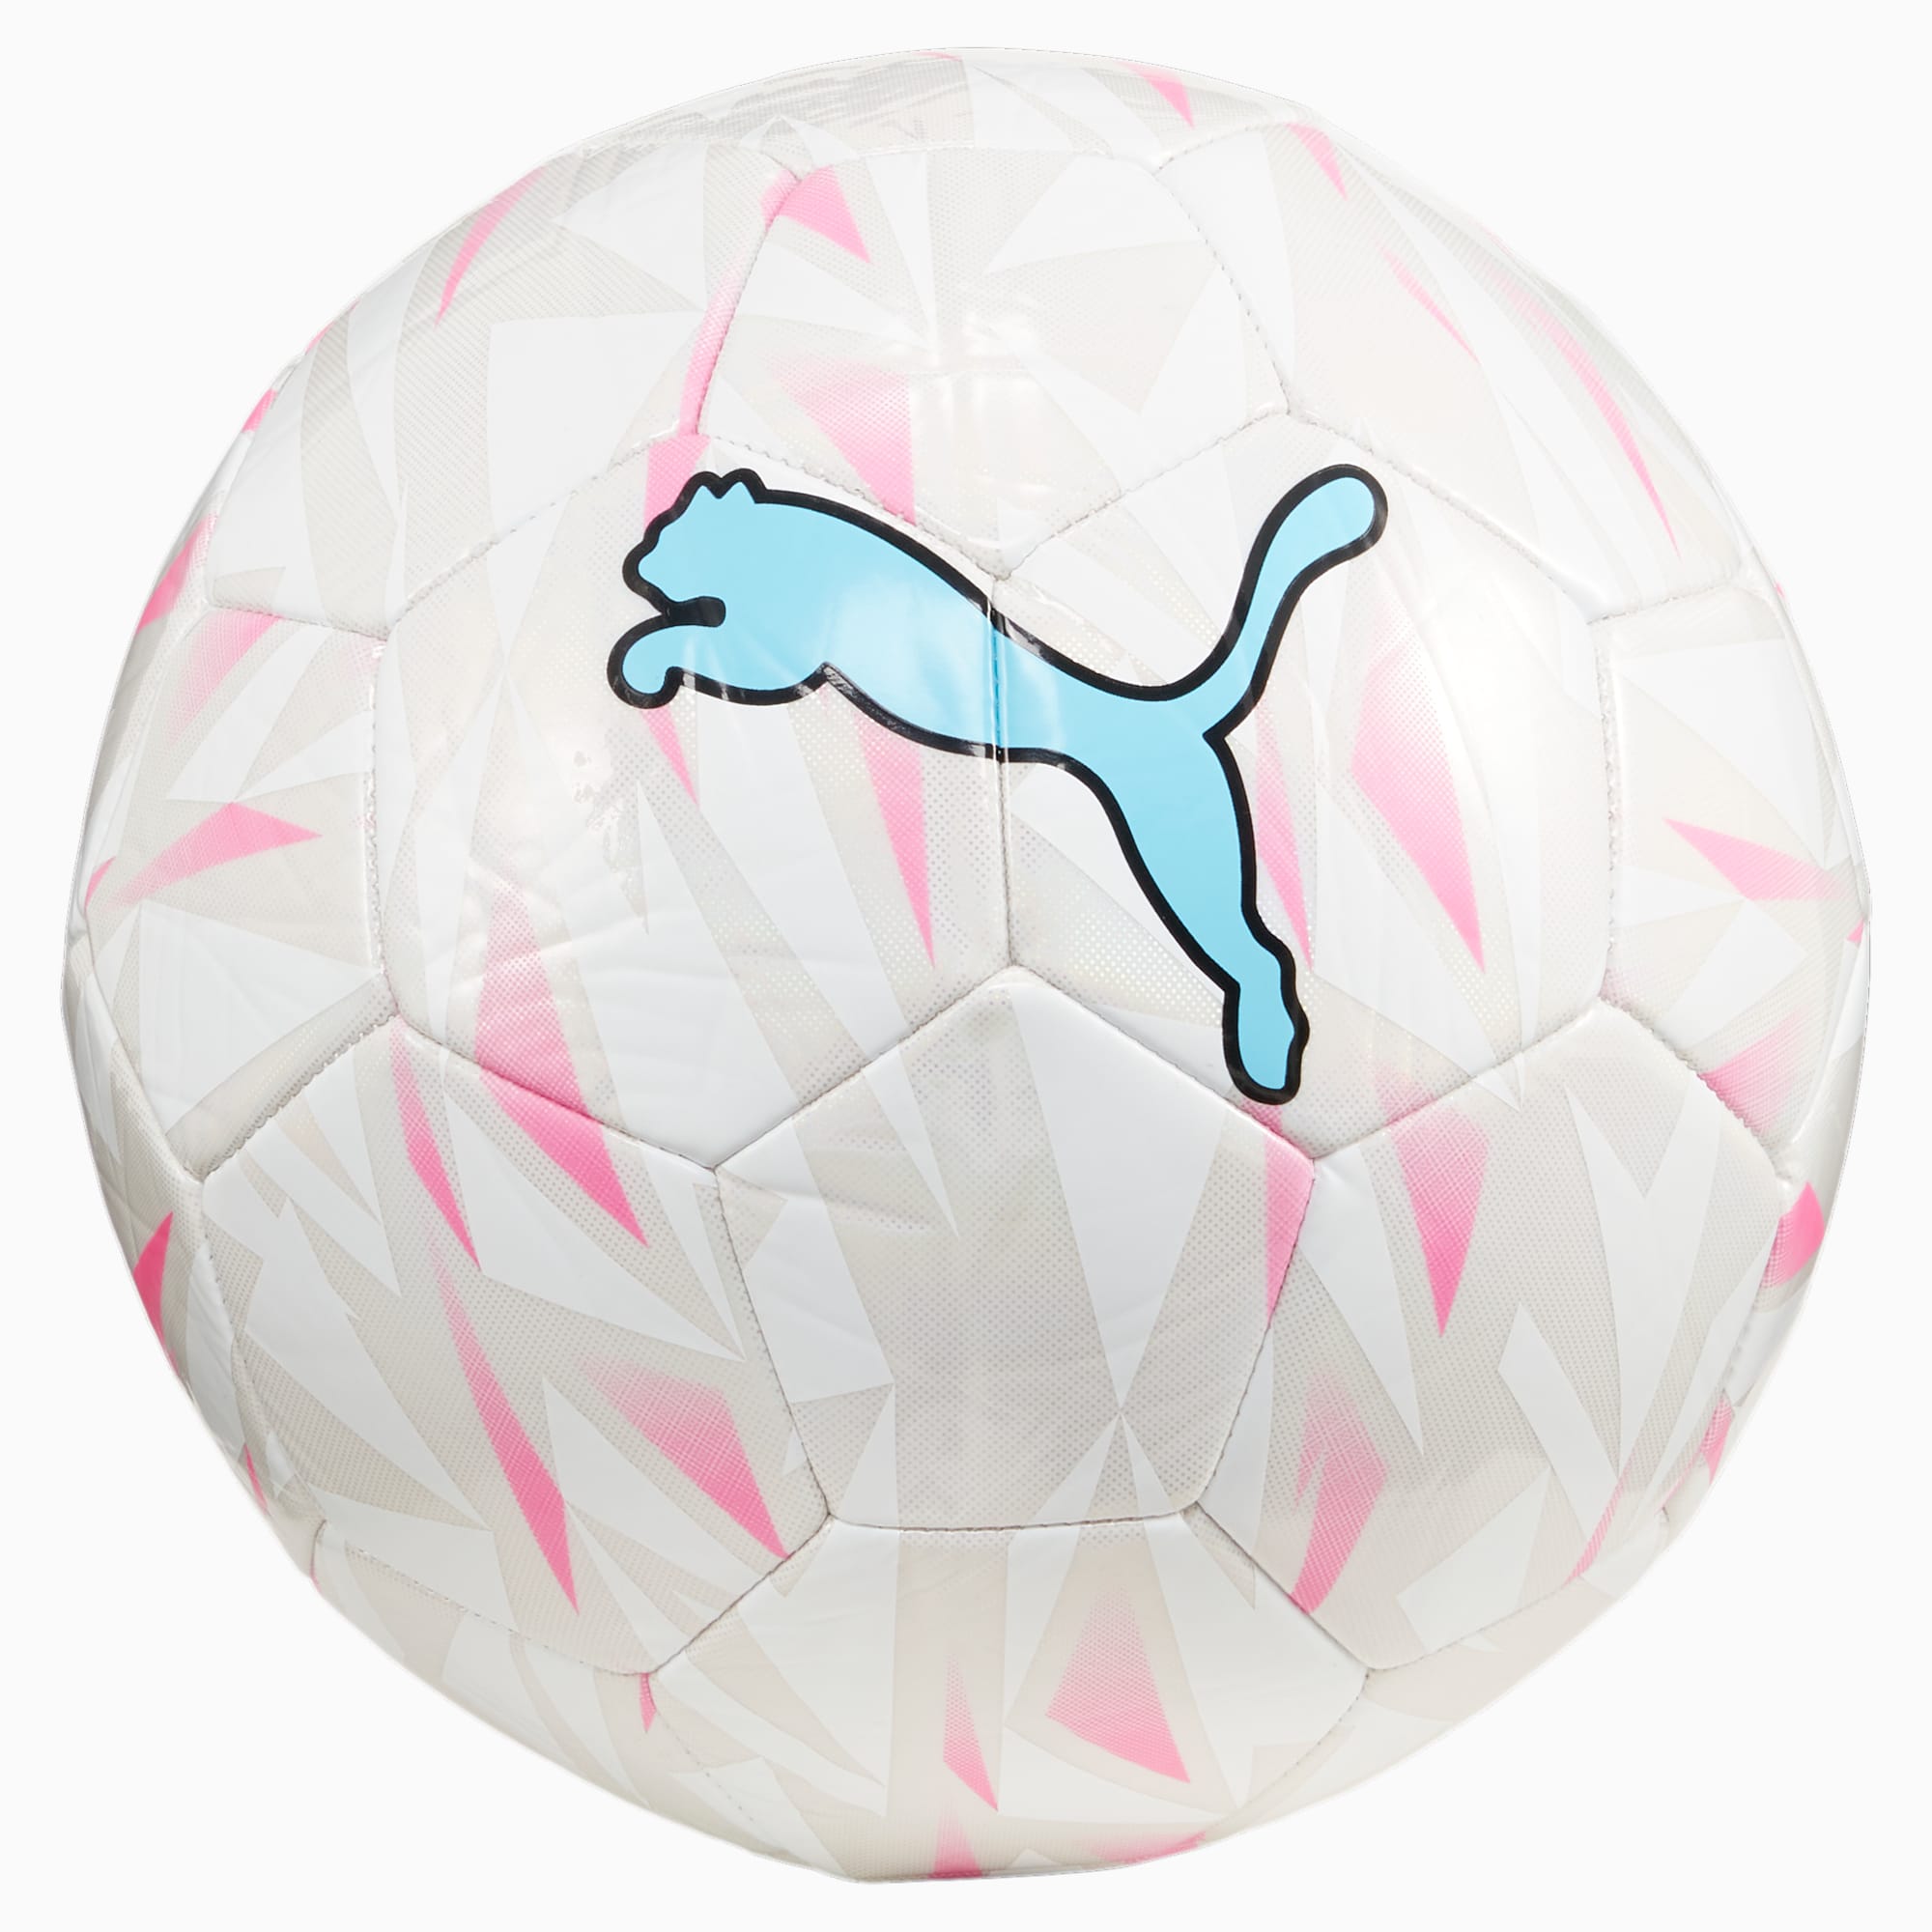 PUMA FINAL Graphic Fußball, Silber/Rosa/Weiß, Größe: 3